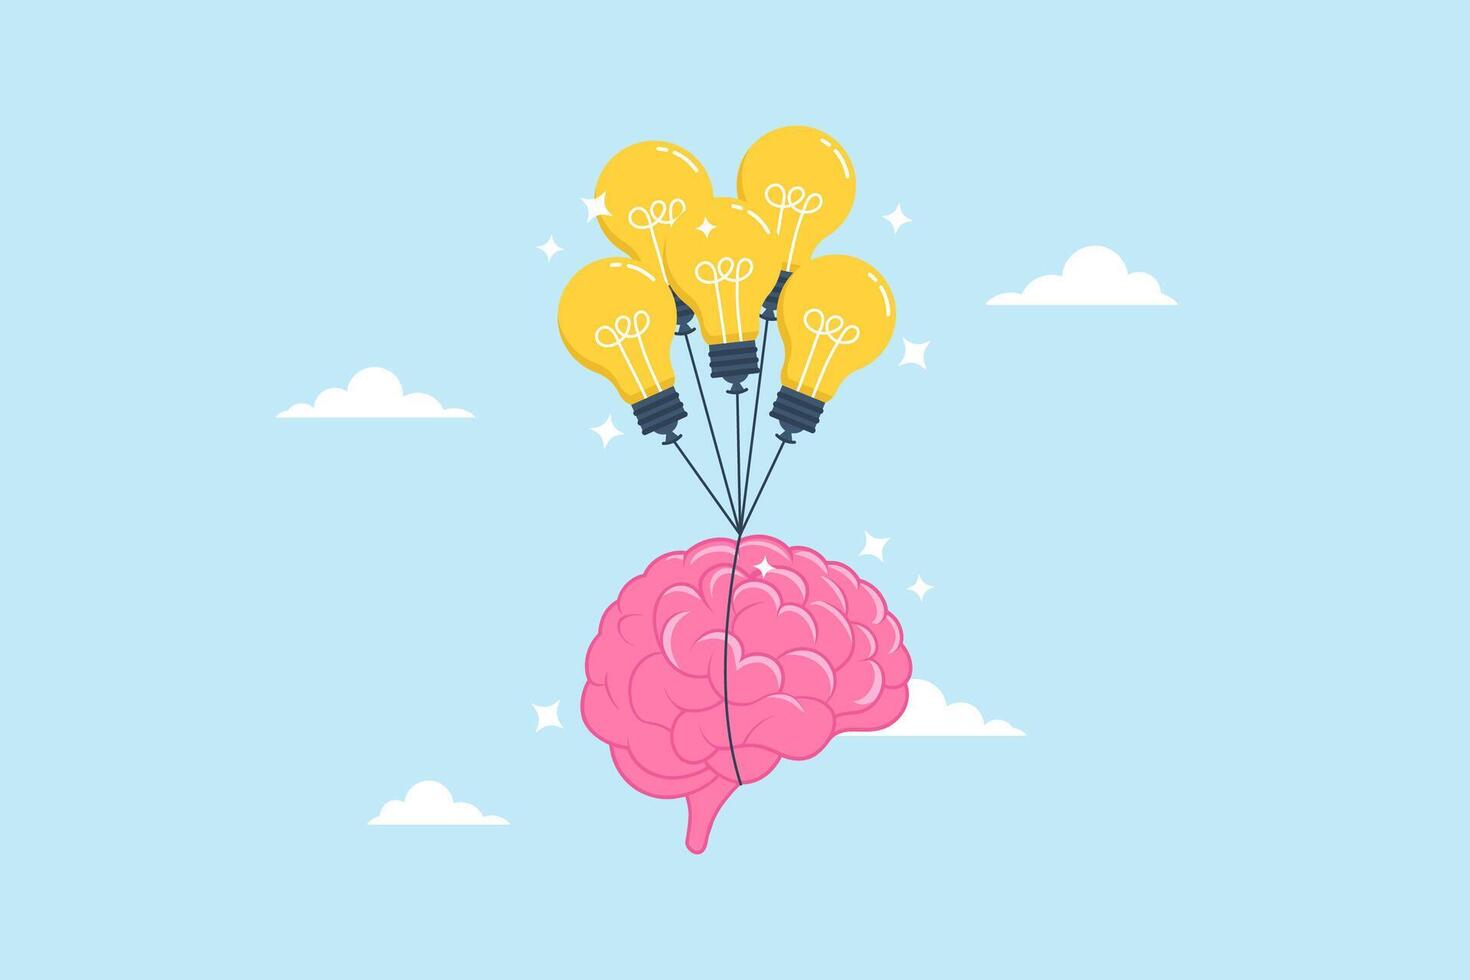 Clever Mensch Gehirn fliegend neben die Glühbirne Idee Luftballons, illustrieren Kreativität und Intelligenz im erreichen Erfolg. Konzept von Fähigkeit zu anwenden Wissen, Weisheit, innovieren und Phantasie vektor